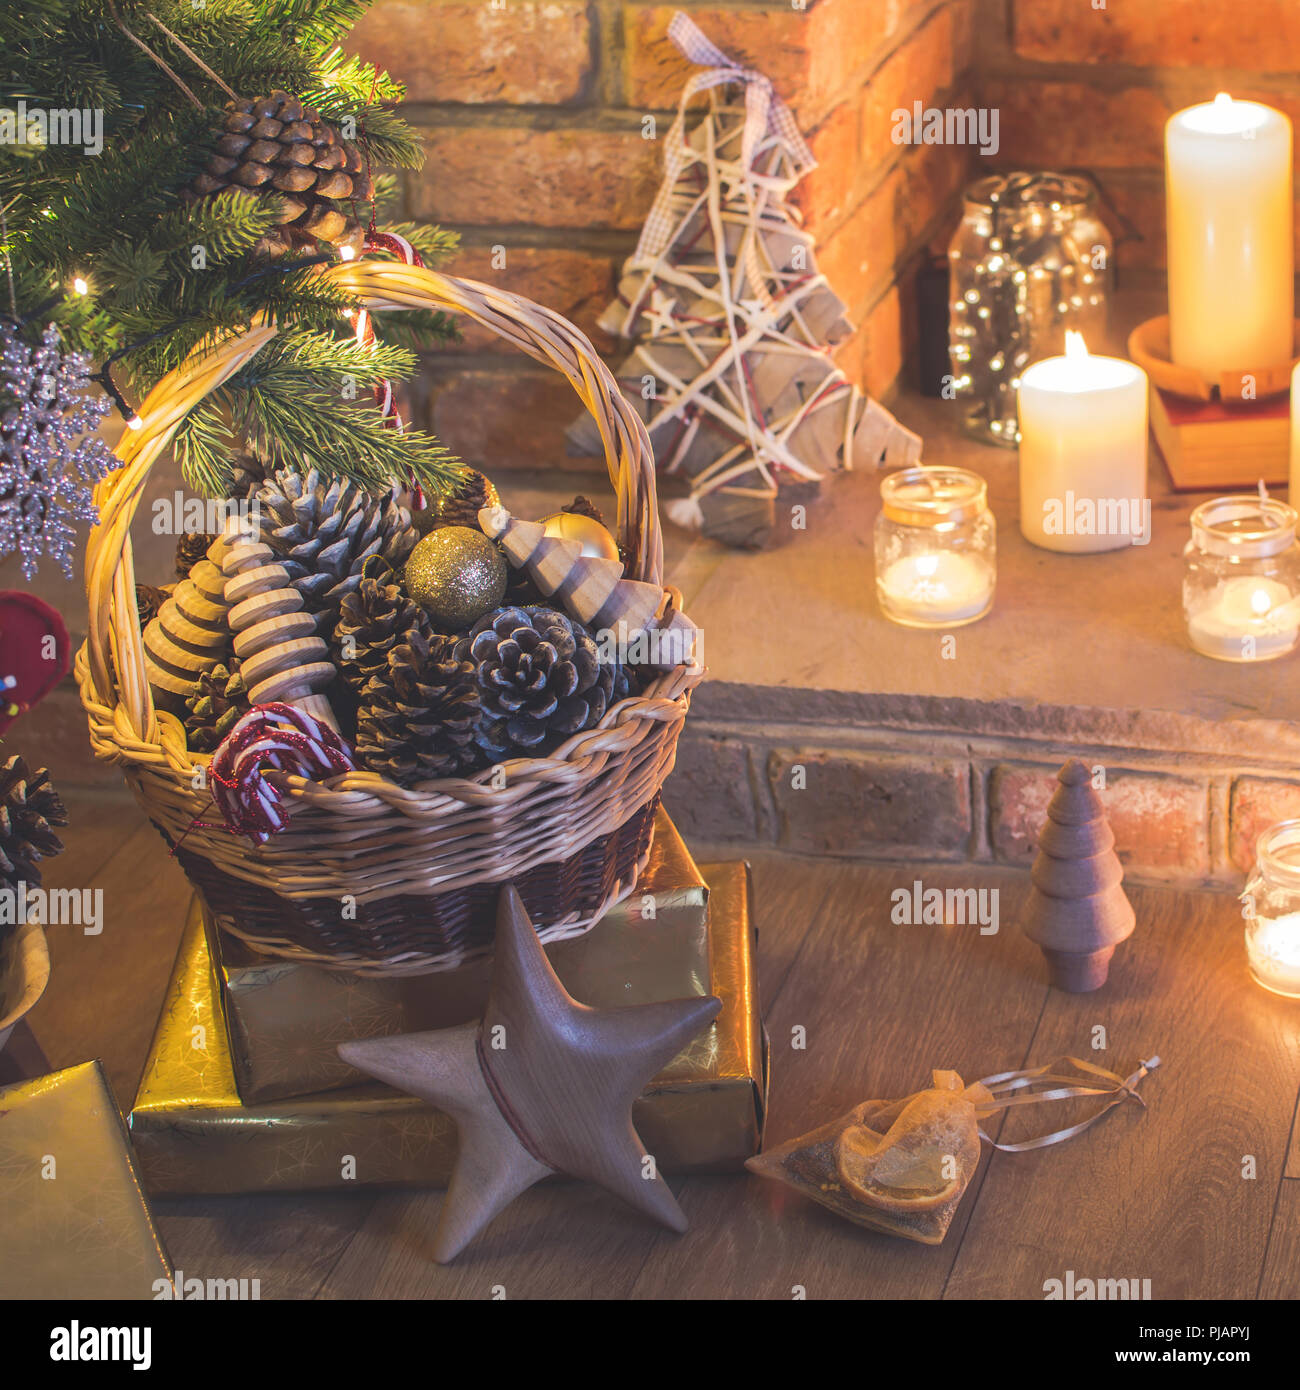 Réglage de Noël arbre de Noël décoré, arrière-plan, des pommes de pin dans le panier, les arbres en bois, poinsettia avec cheminée sur l'arrière-plan, des bougies d'une Banque D'Images